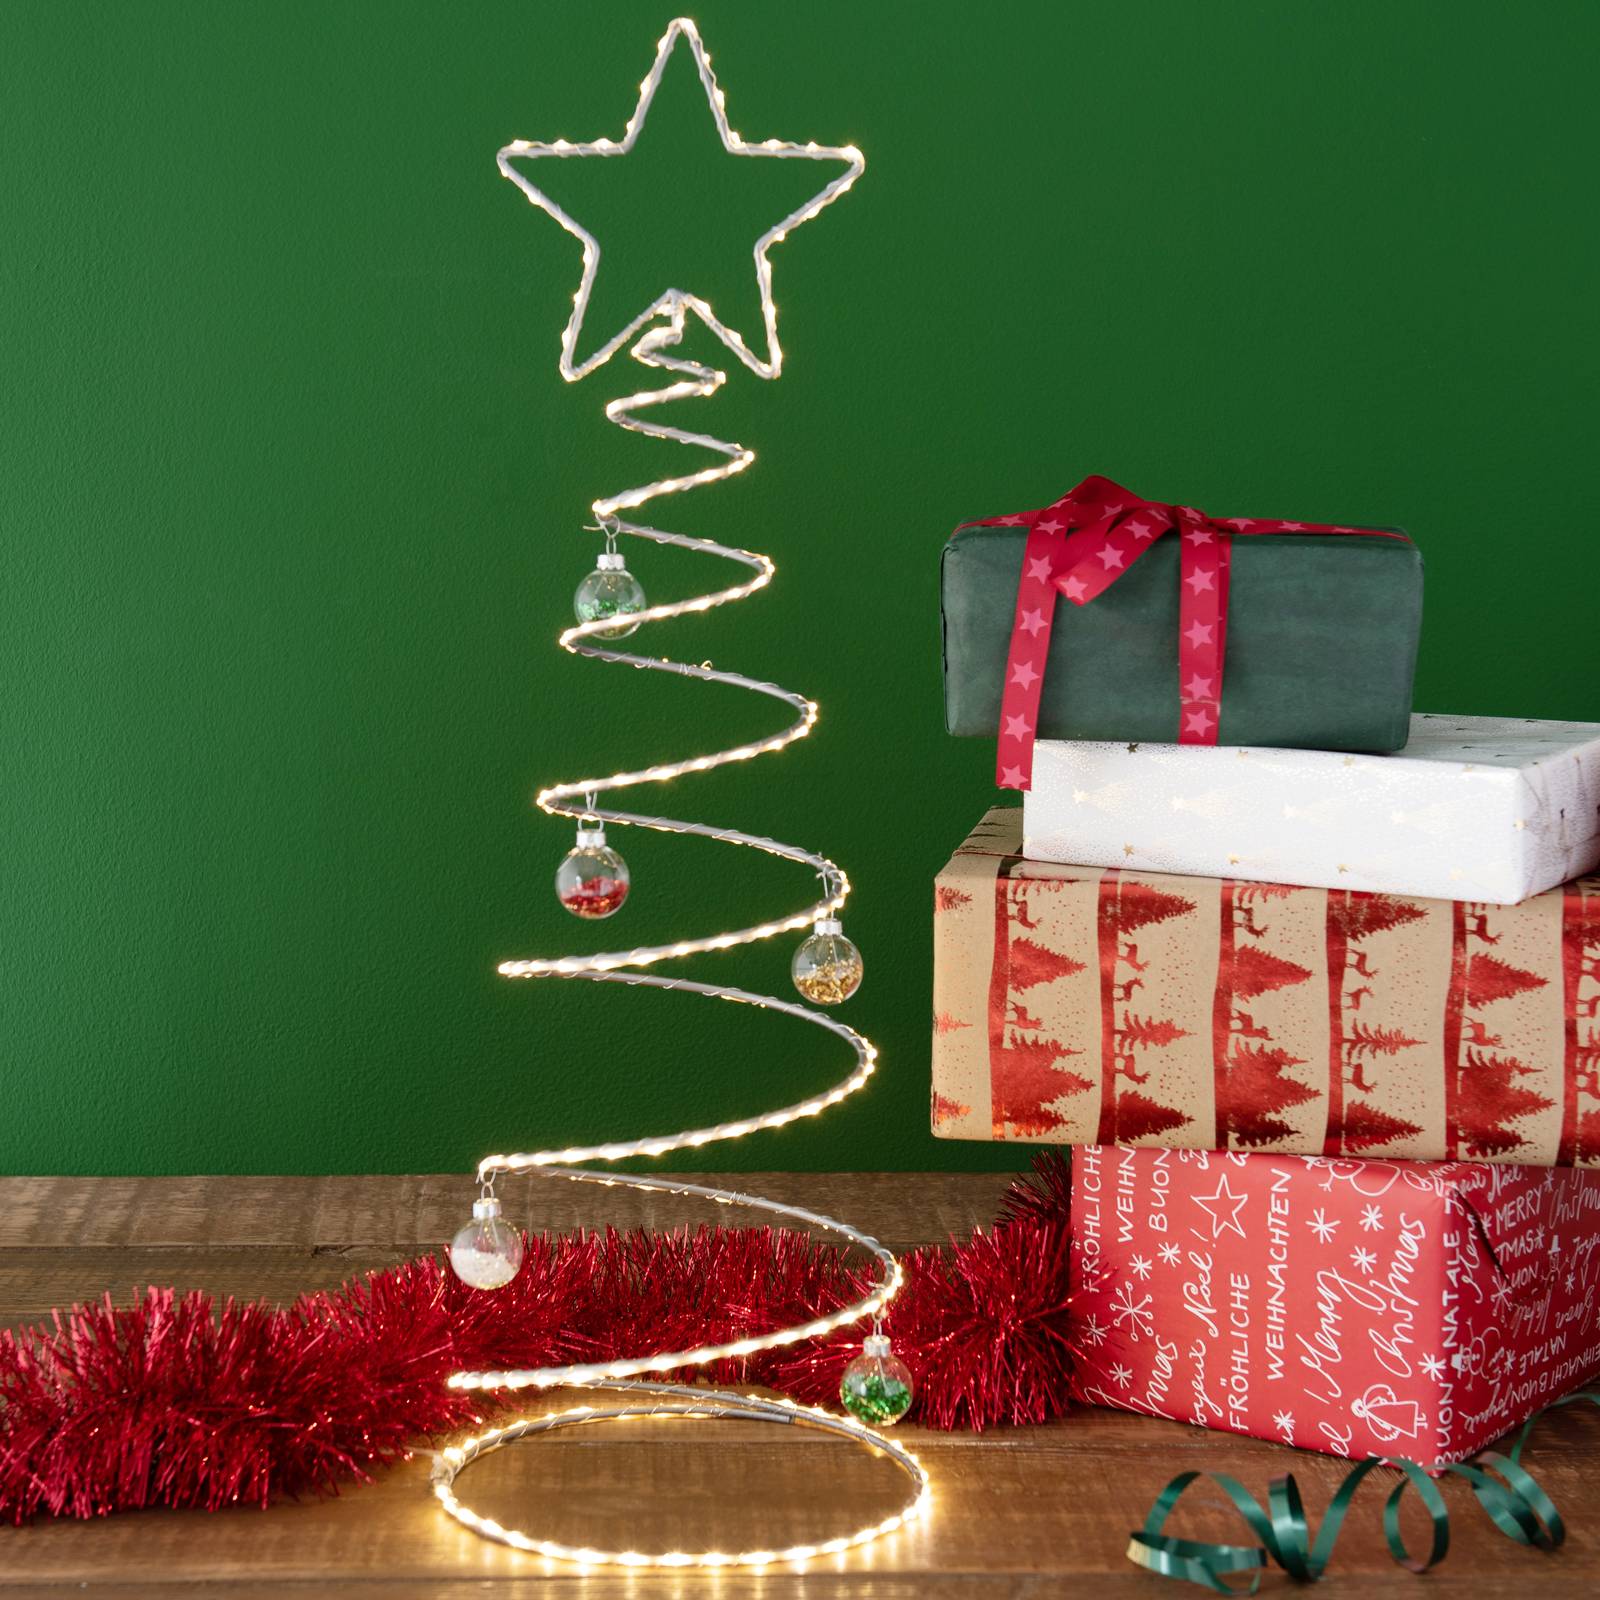 4 Taglie Mini Alberi di Natale Tavolo Artificiale Top Albero di Natale per lartigianato e Le Decorazioni di Natale 3 Colori AerWo 24 Pz 